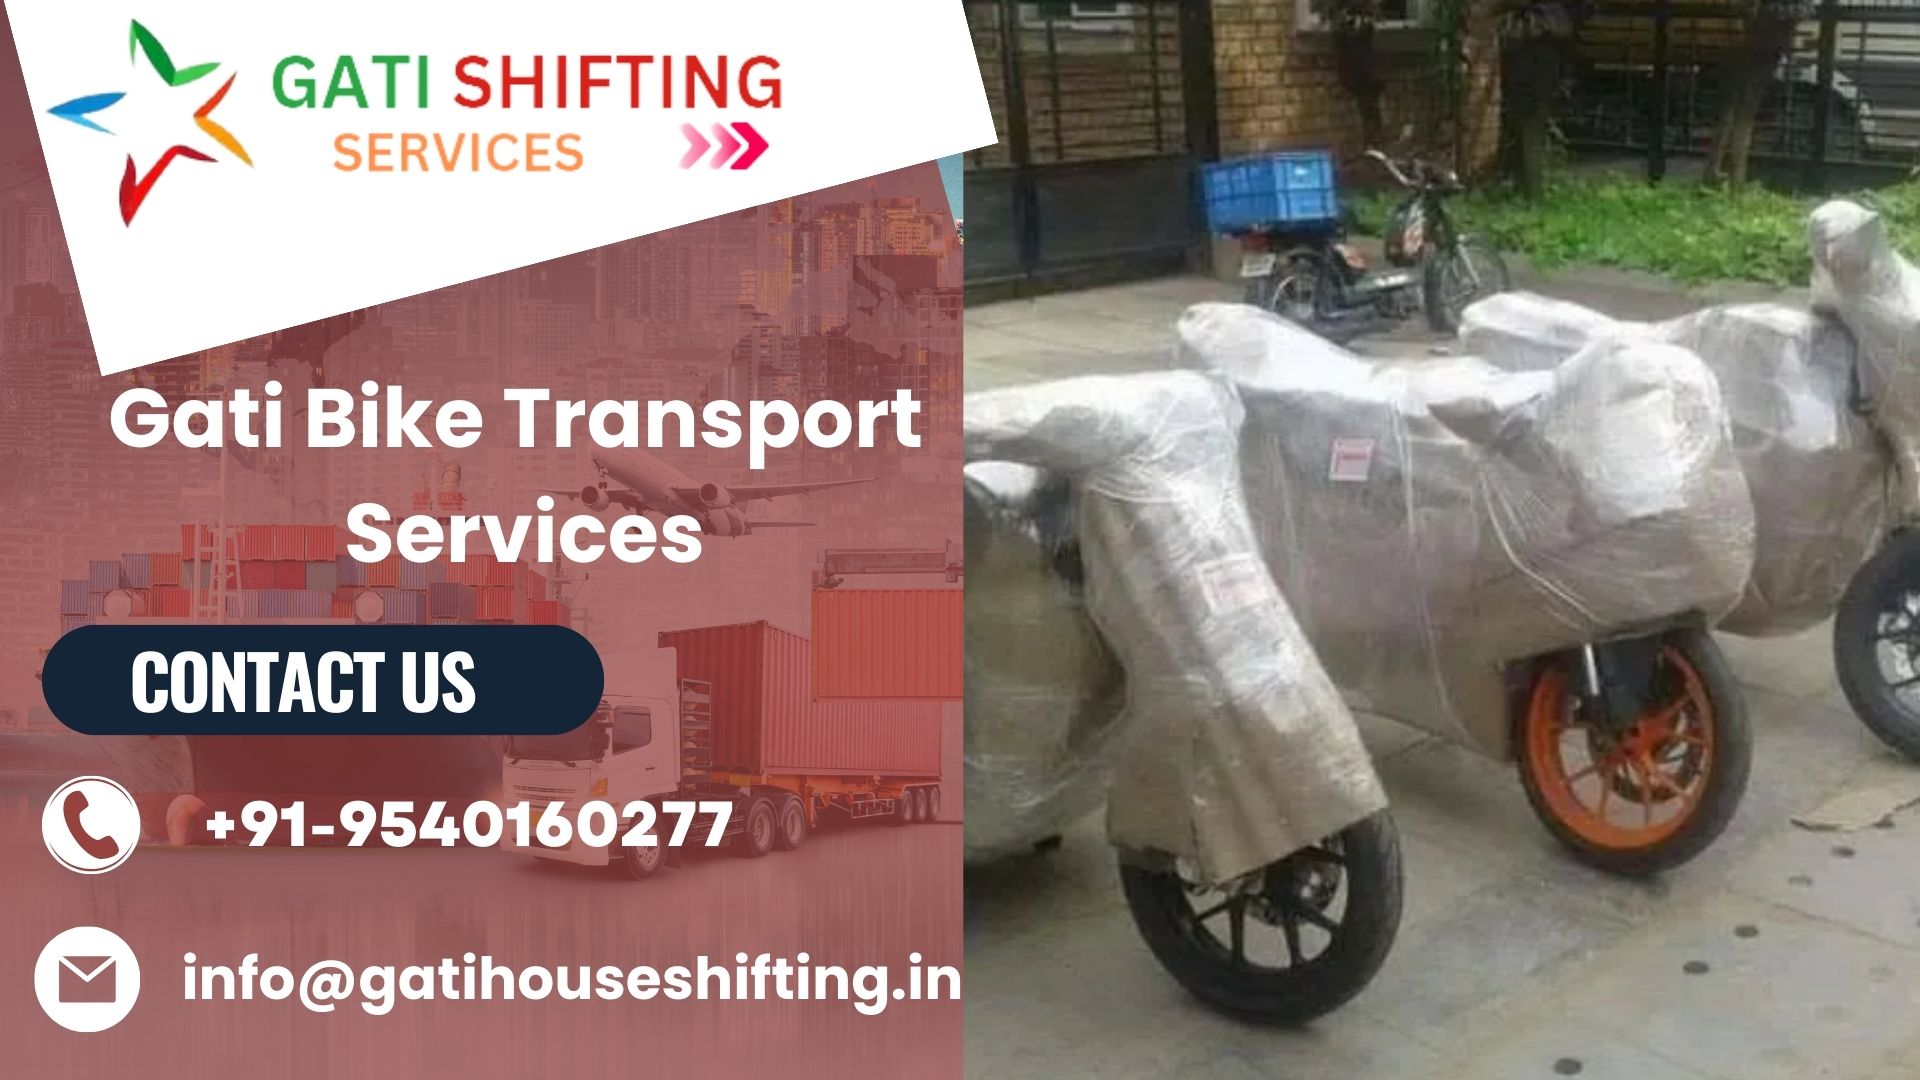 Gati bike transport service in Goa